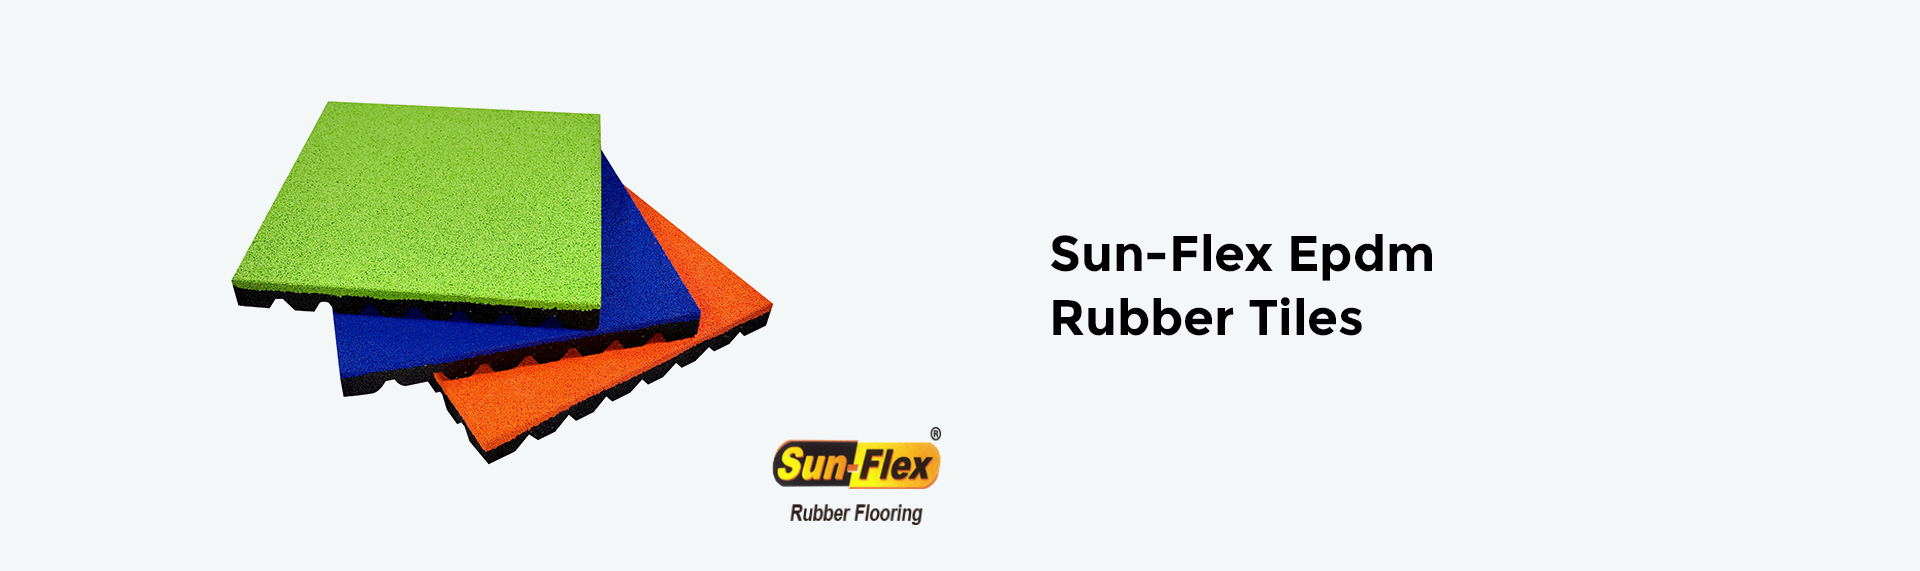 Sun-Flex-Epdm-Rubber-Tiles